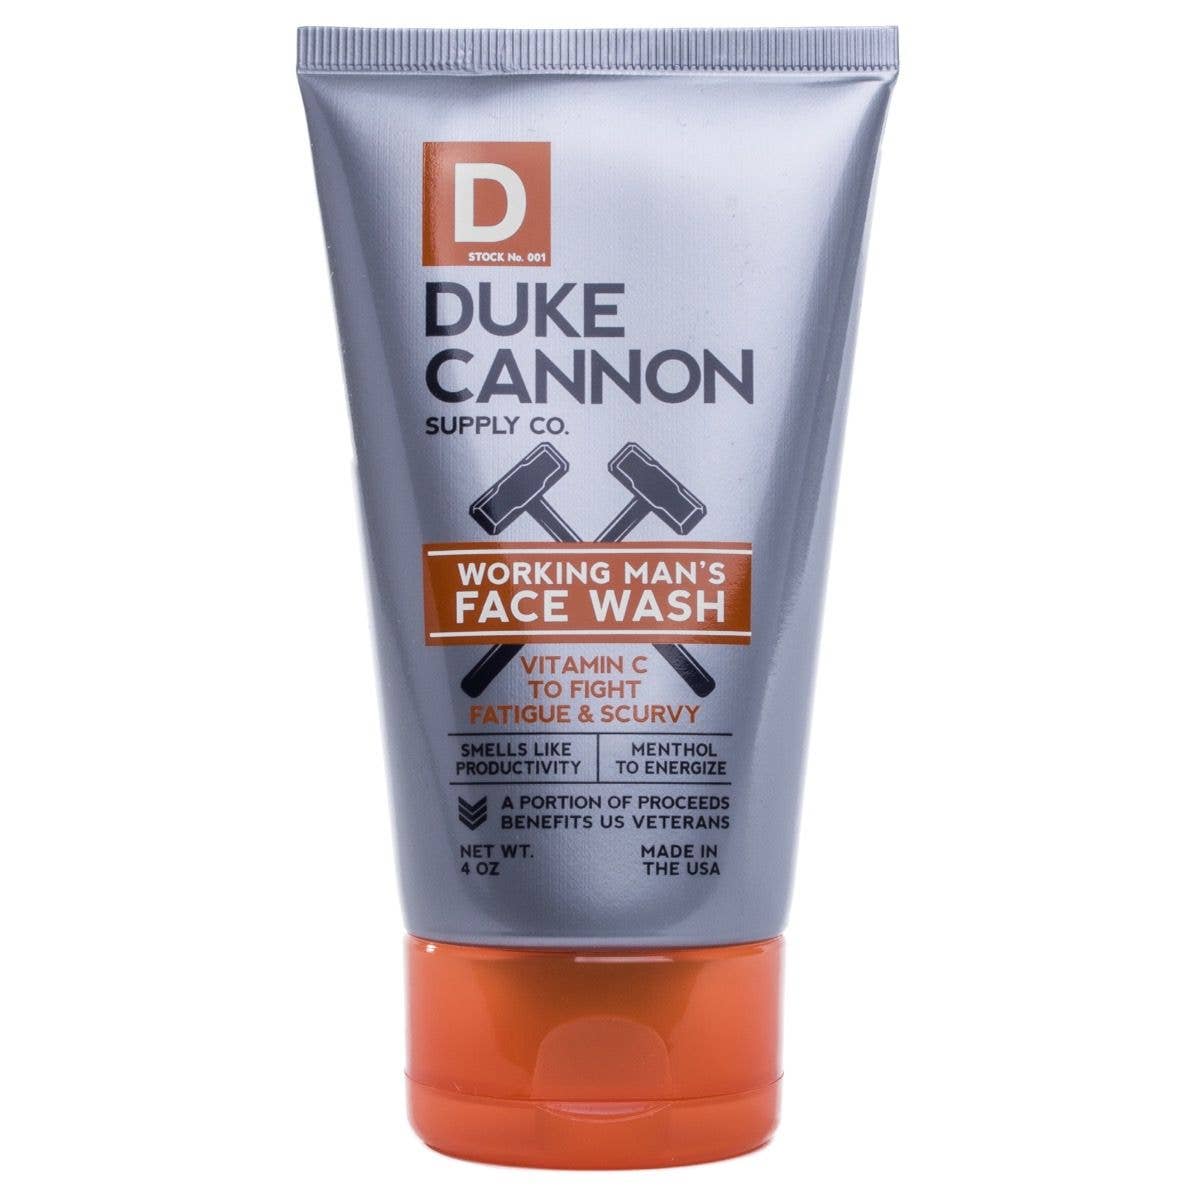 Duke Cannon Working Man's Face Wash